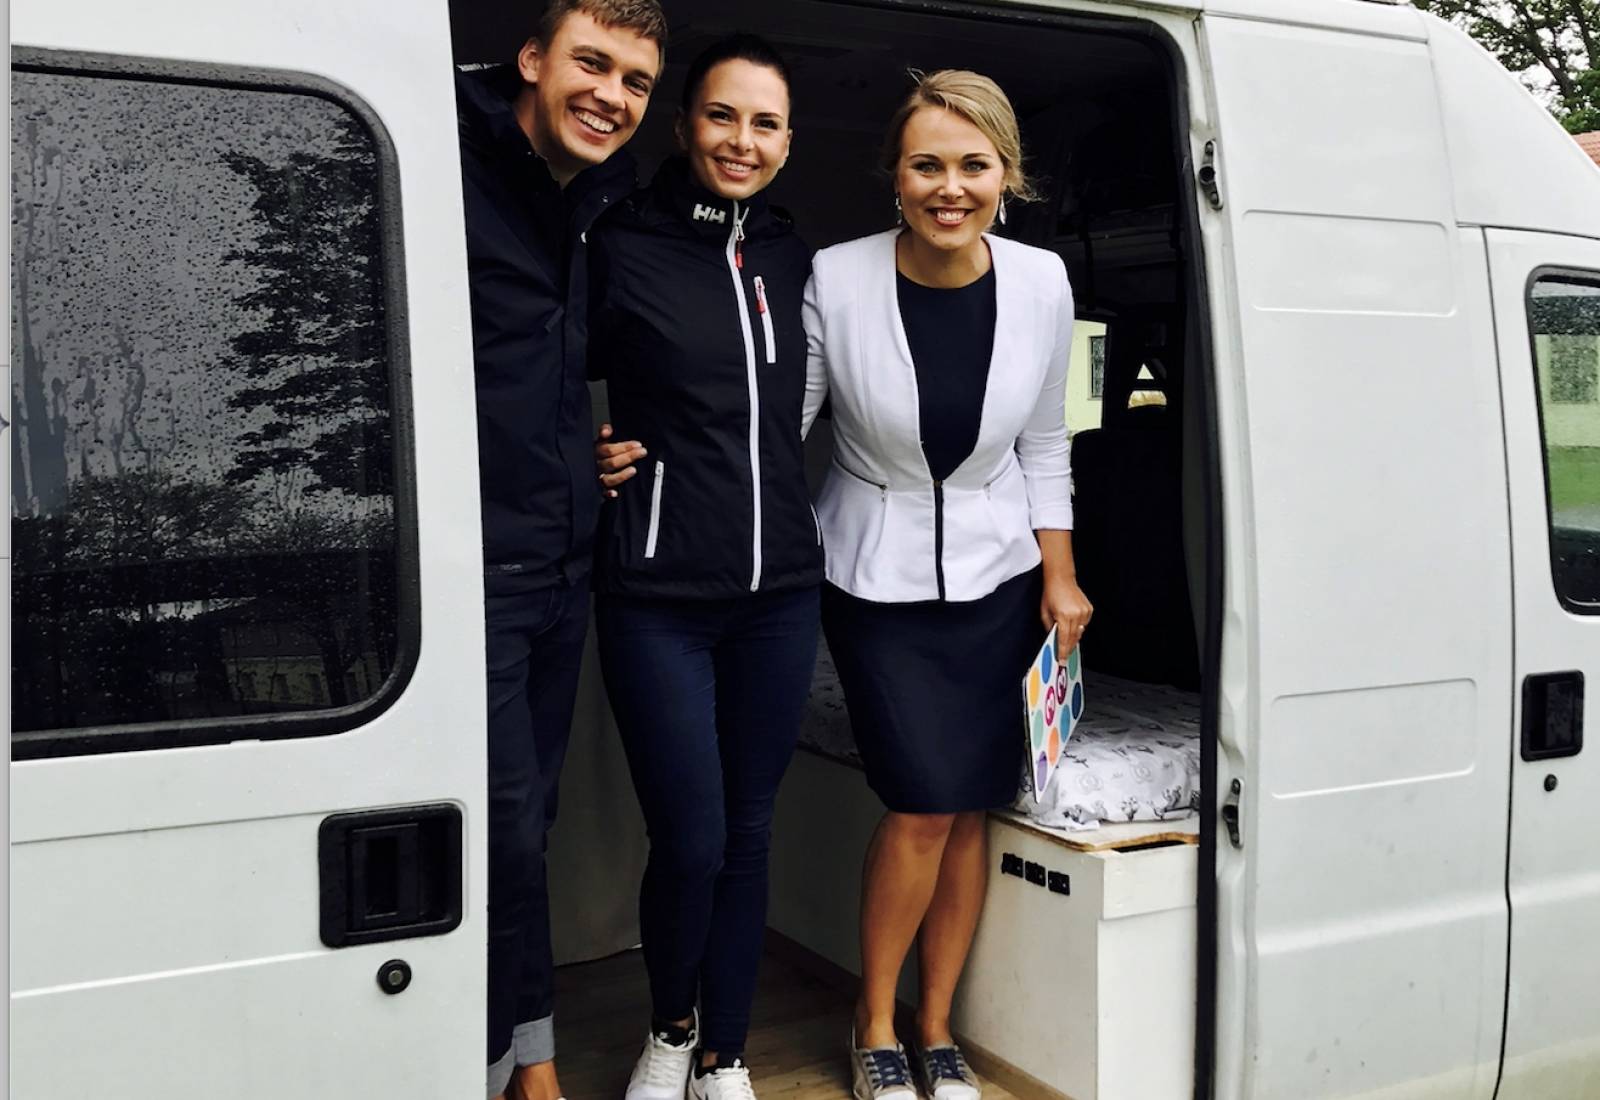 VIDEO! Imetlusväärne! Noor Eesti pere seikles koduks ehitatud bussiga 9 kuud Euroopas!